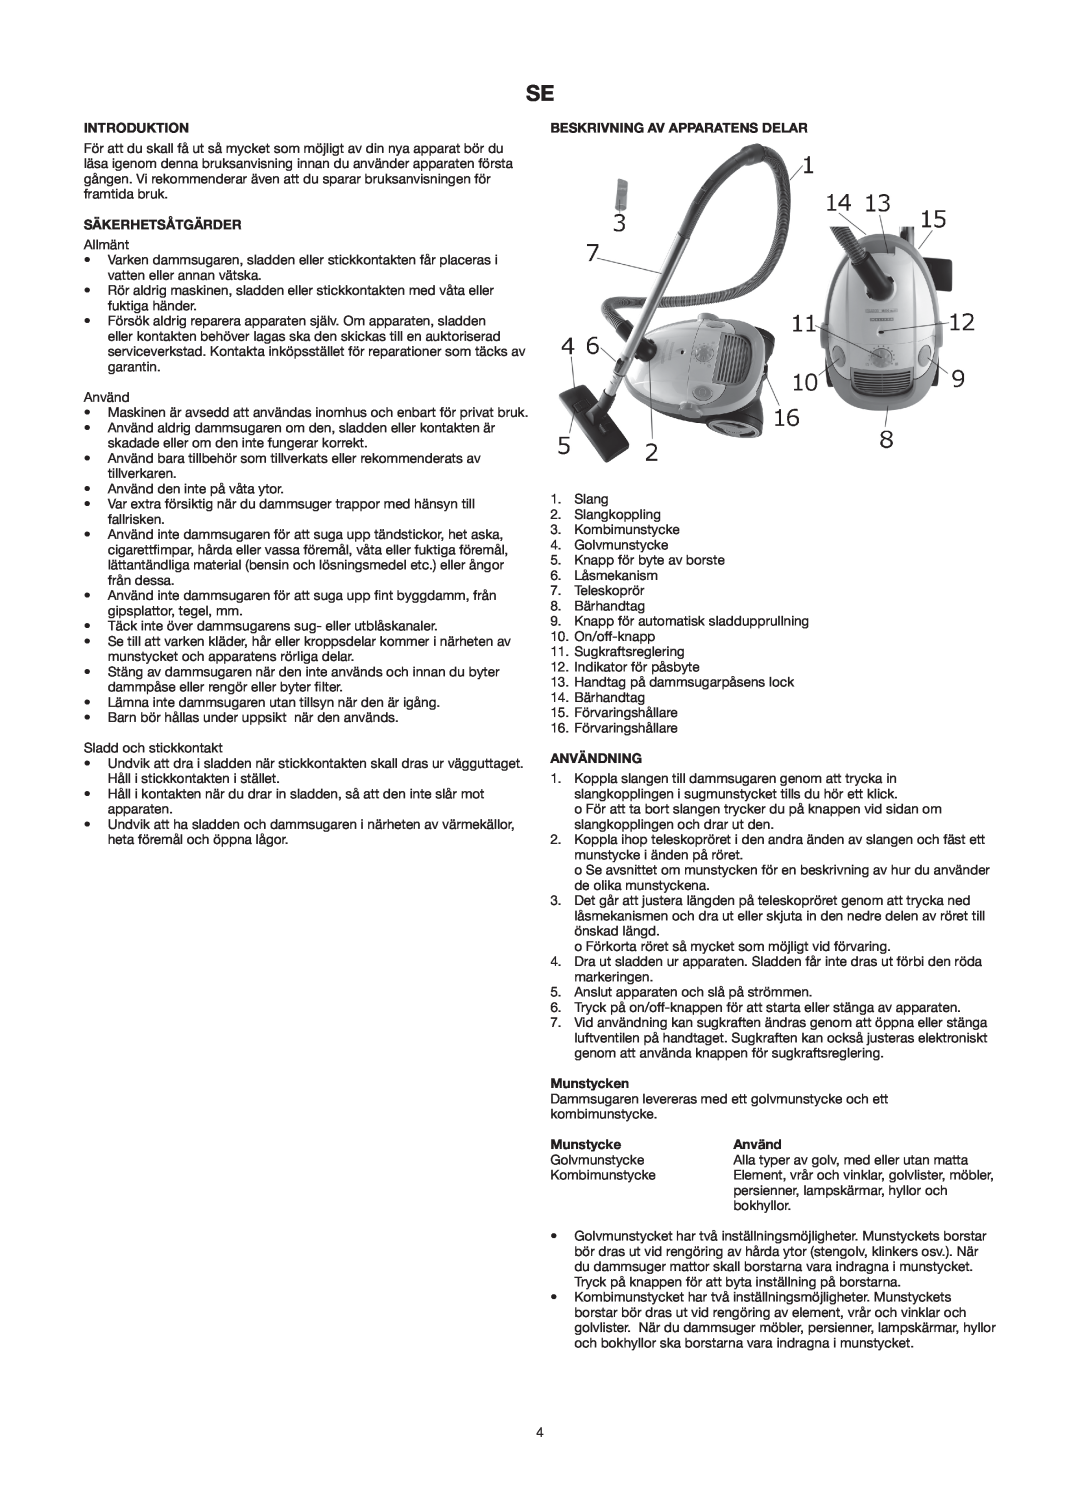 Melissa 640-121 manual Säkerhetsåtgärder, Beskrivning Av Apparatens Delar, Användning, Munstycken, Introduktion 